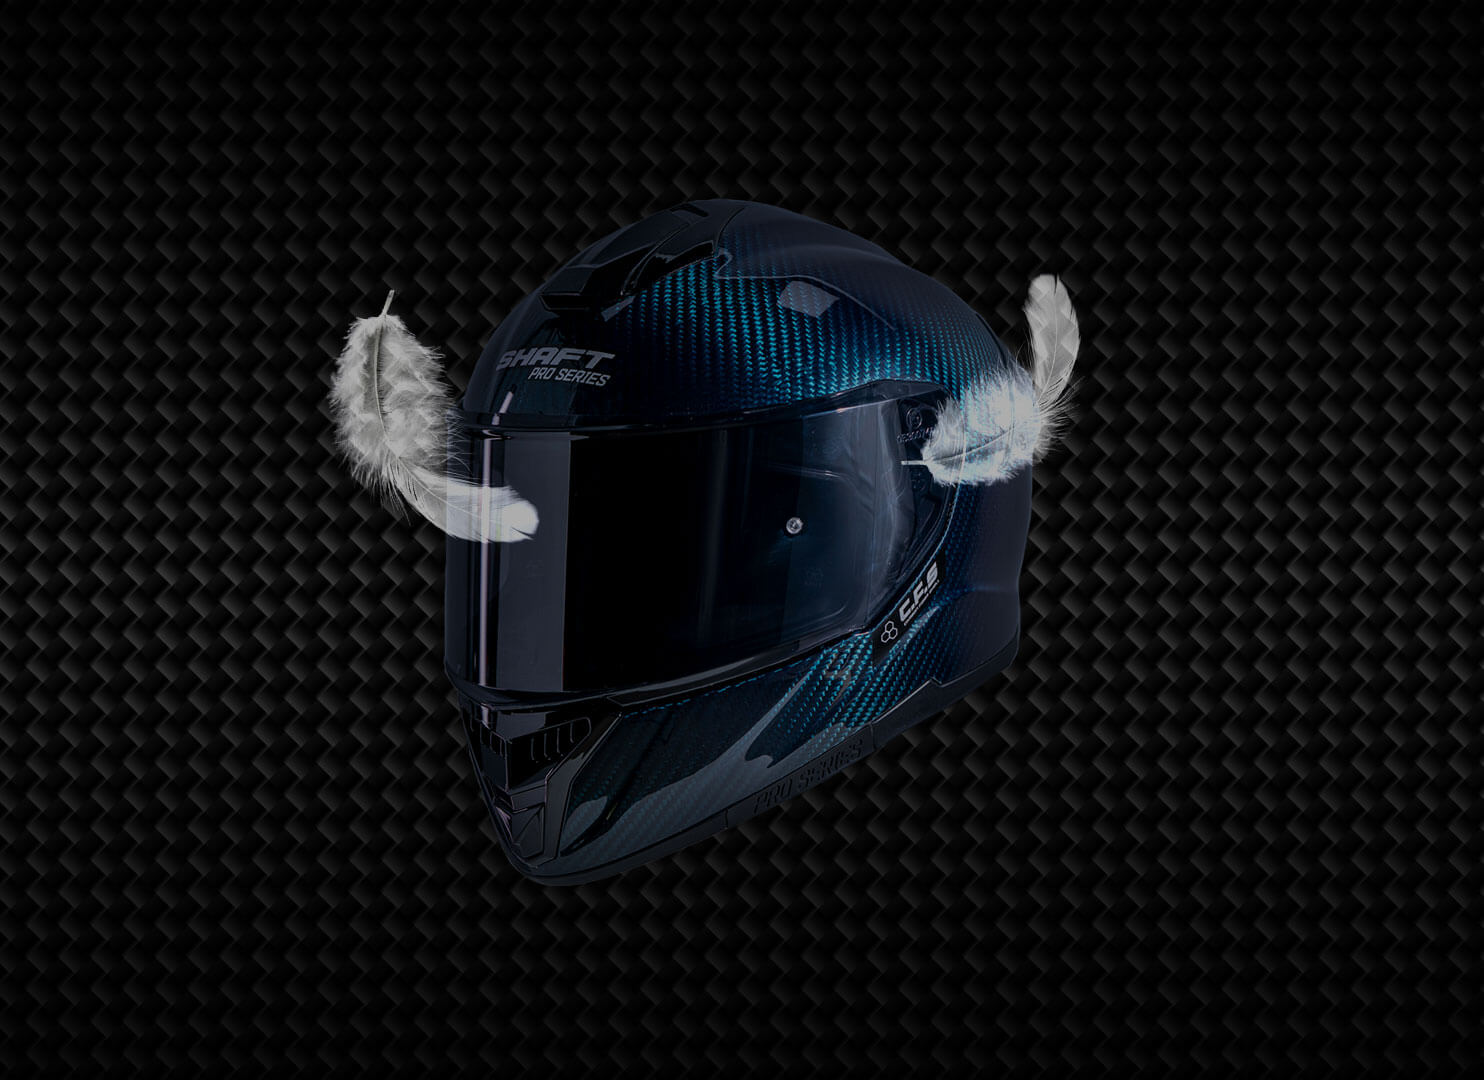 Partes de un casco de moto y materiales